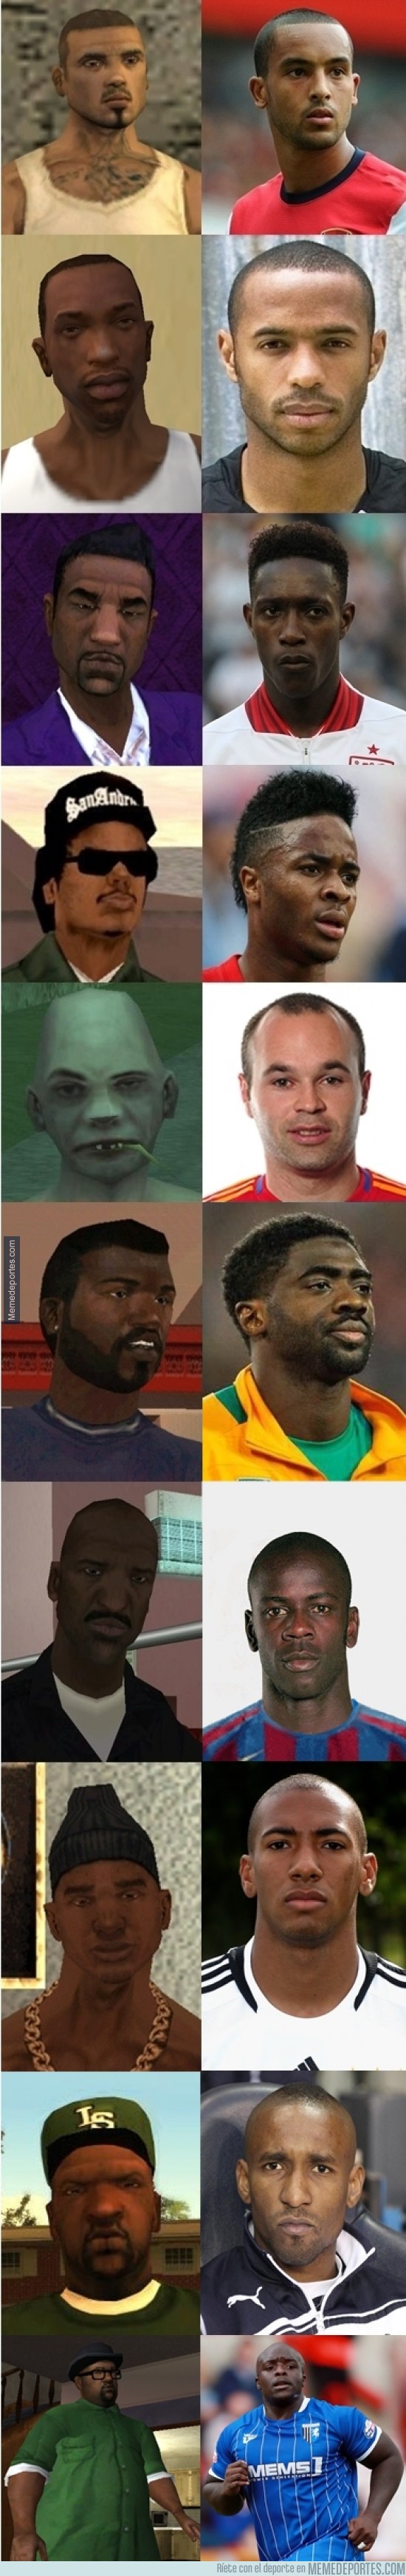 437511 - Personajes de GTA San Andreas y sus parecidos futbolistas